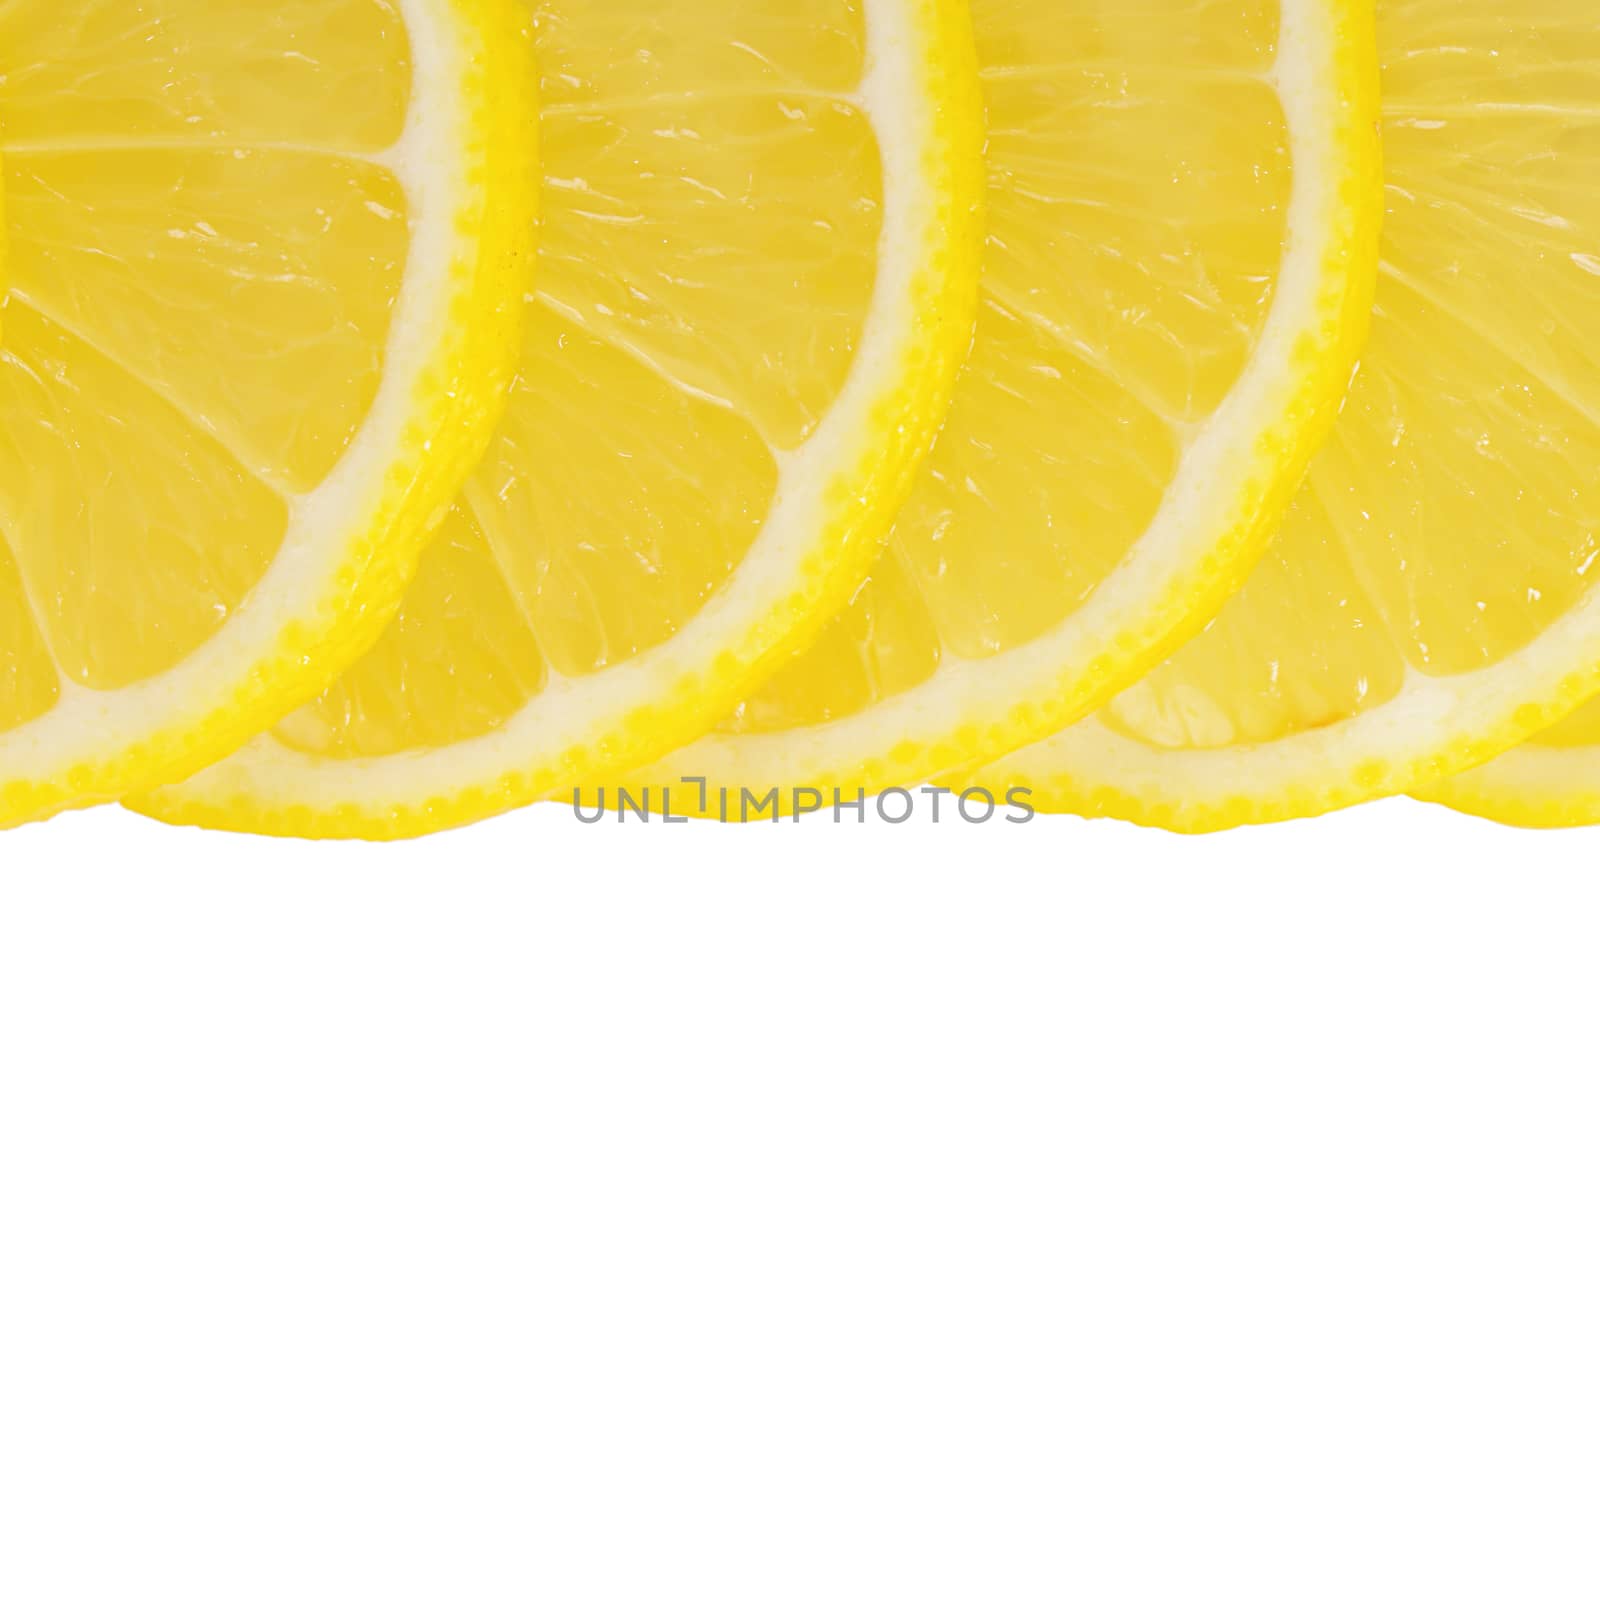 The fresh lemon isolated on white background